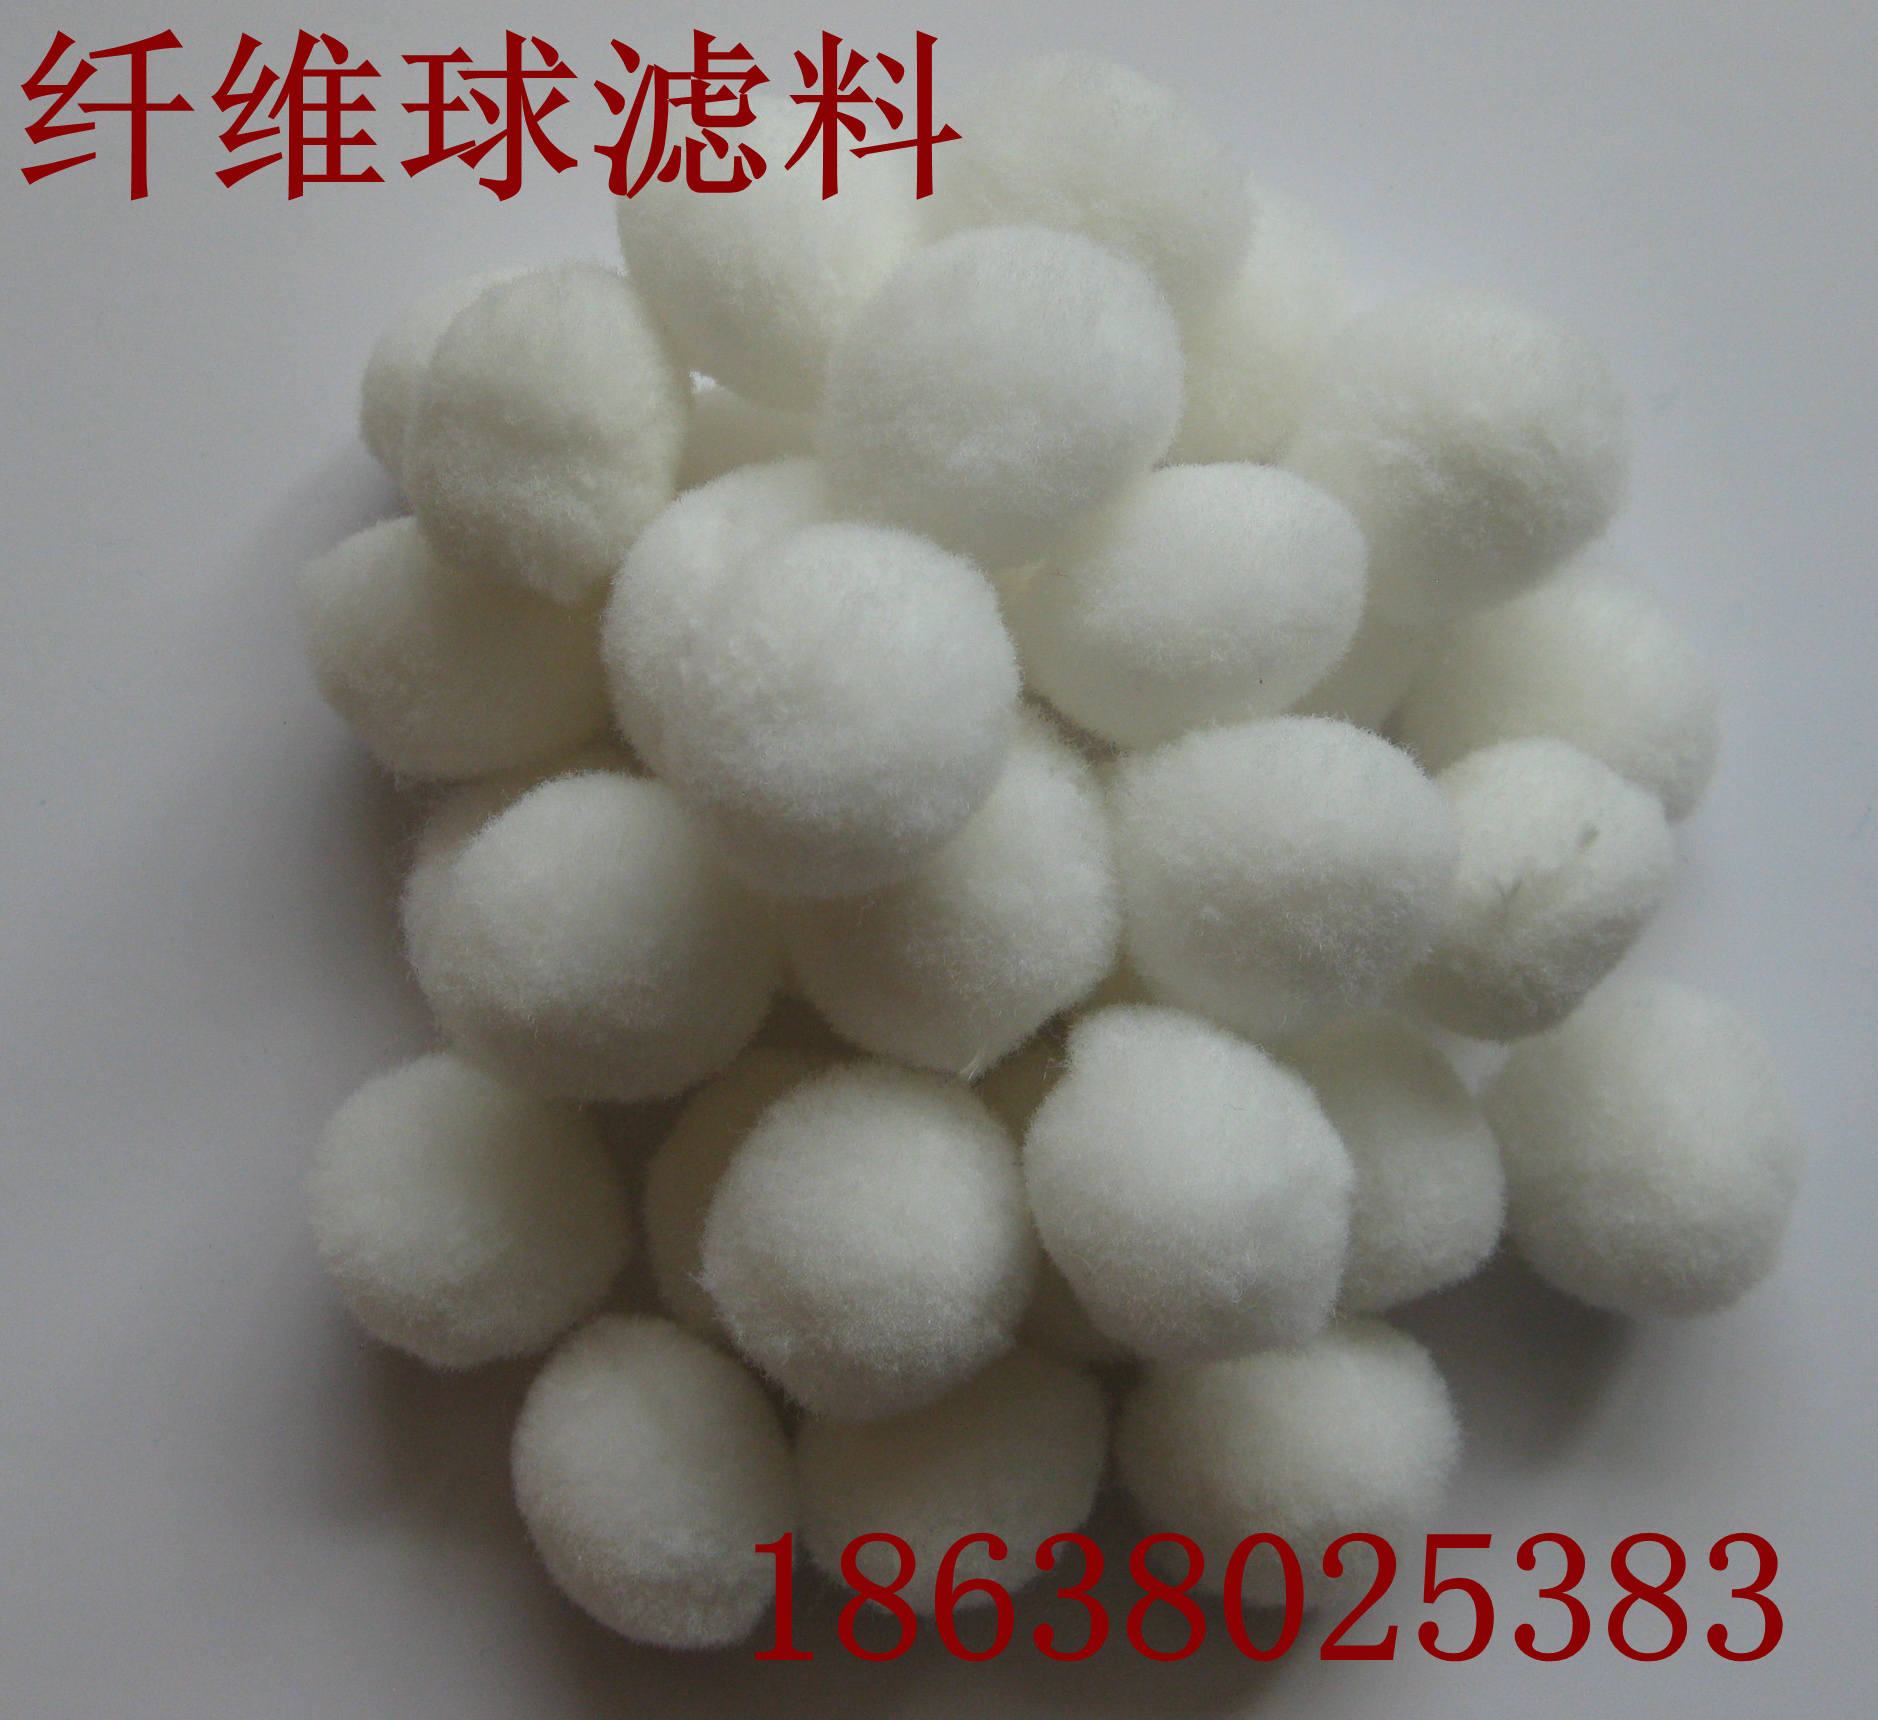 供应纤维球滤料厂家直销 纤维球滤料价格 纤维球滤料 环保纤维球滤料